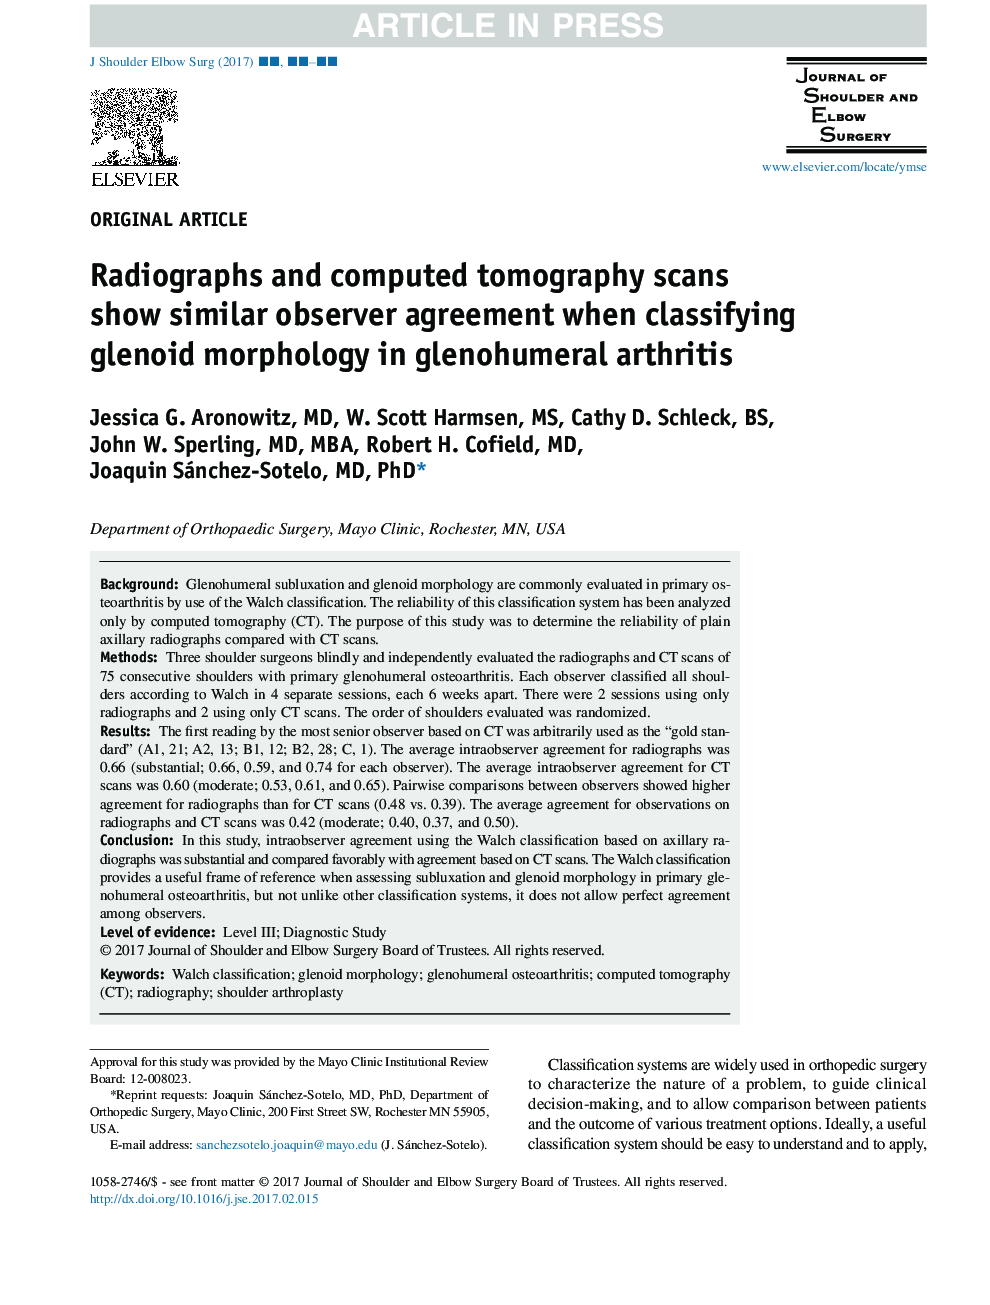 اسکن رادیوگرافی و توموگرافی کامپیوتری، توافق مشابهی را مشاهده می کنند زمانی که طبقه بندی مورفولوژی گلنوئید در آرتریت گلنوهومرال 